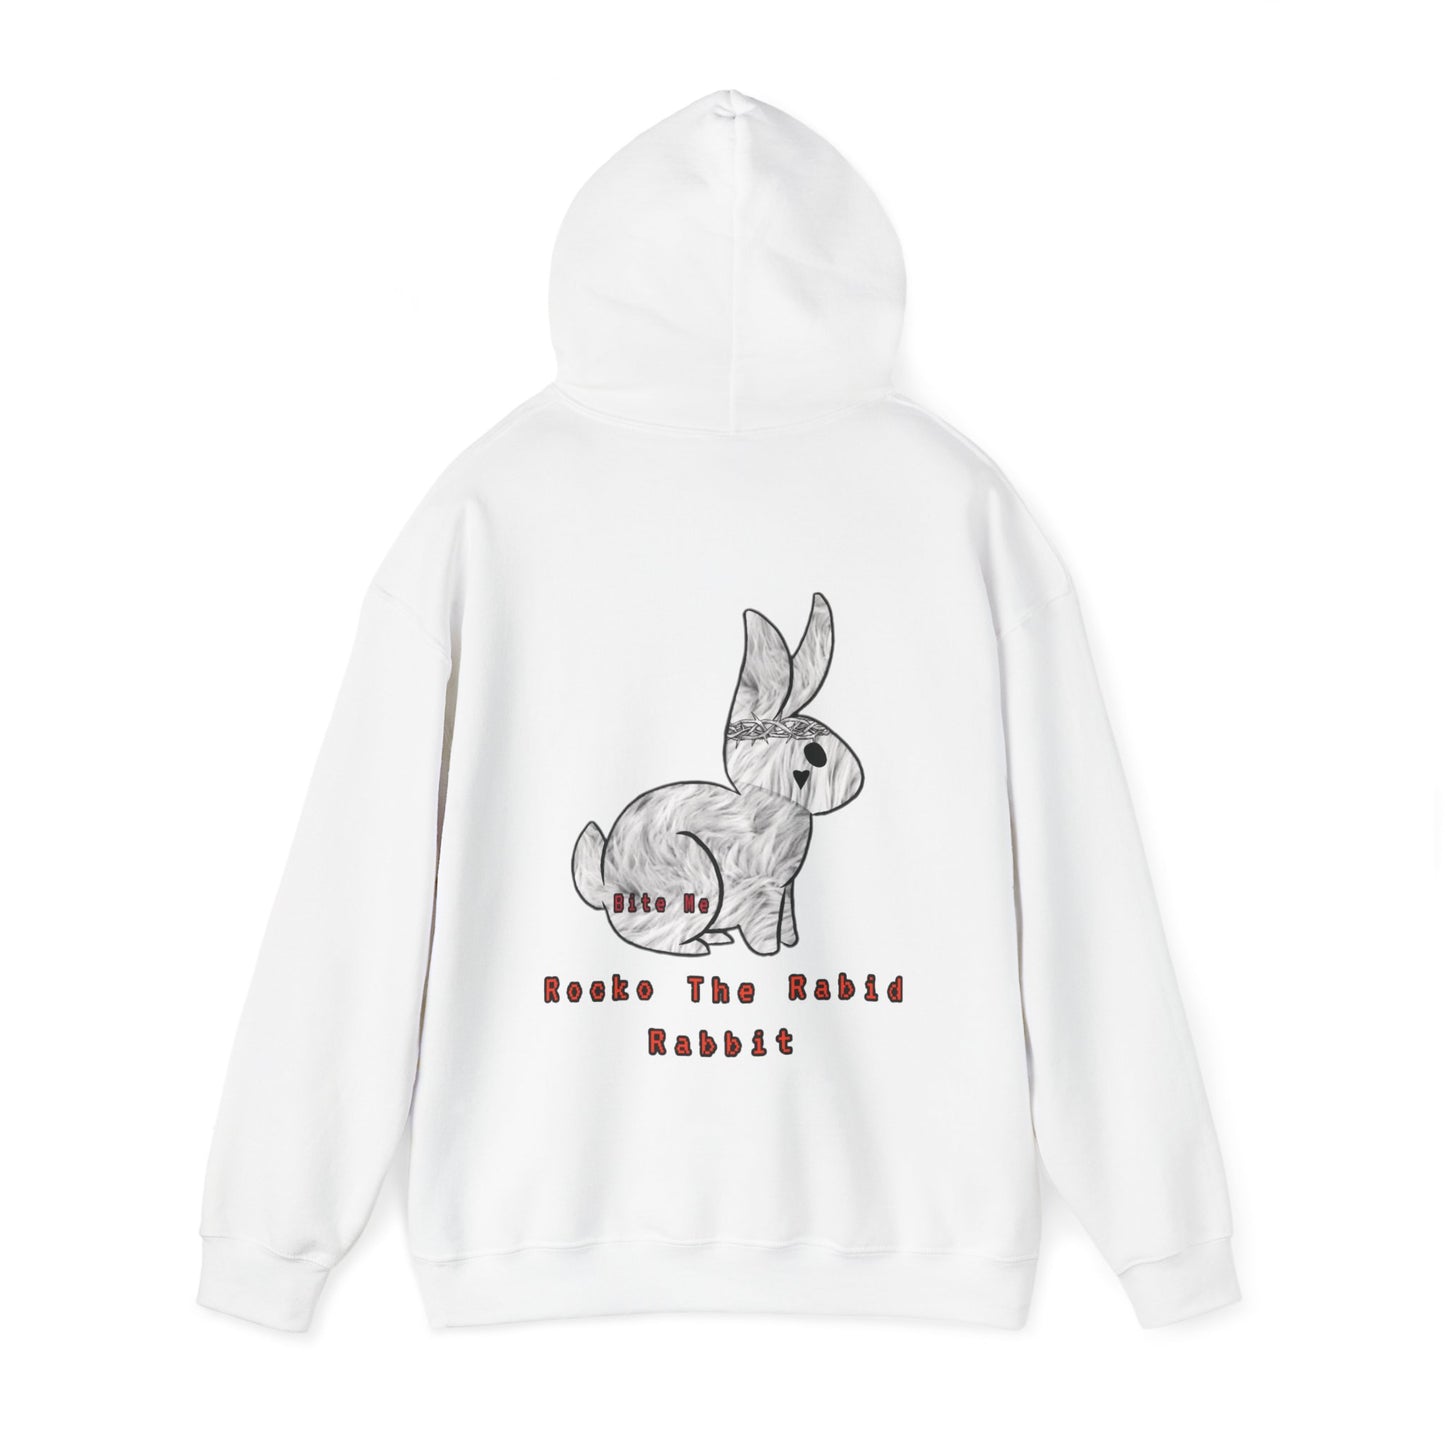 Rocko The Rabid Rabbit